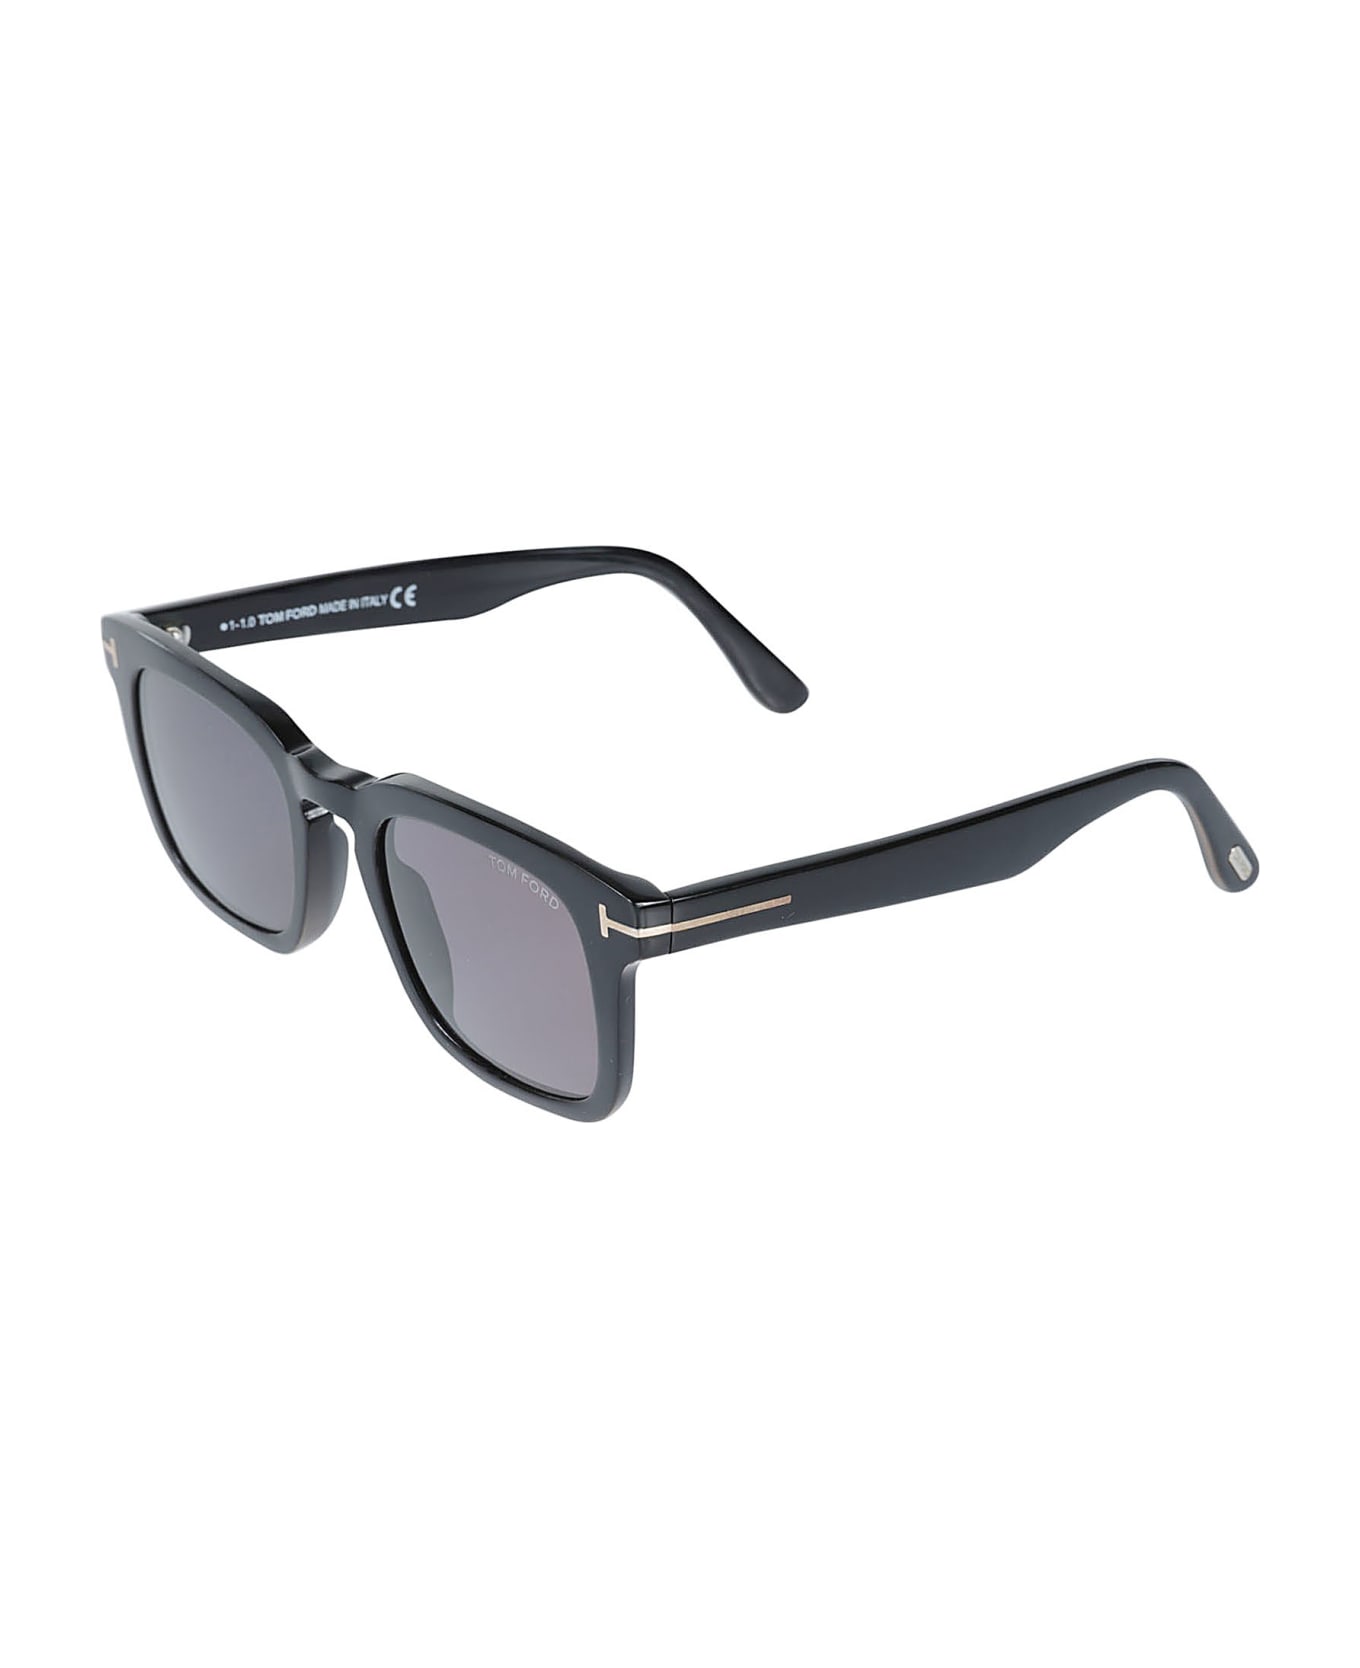 Tom Ford Eyewear Dax Sunglasses - 52N